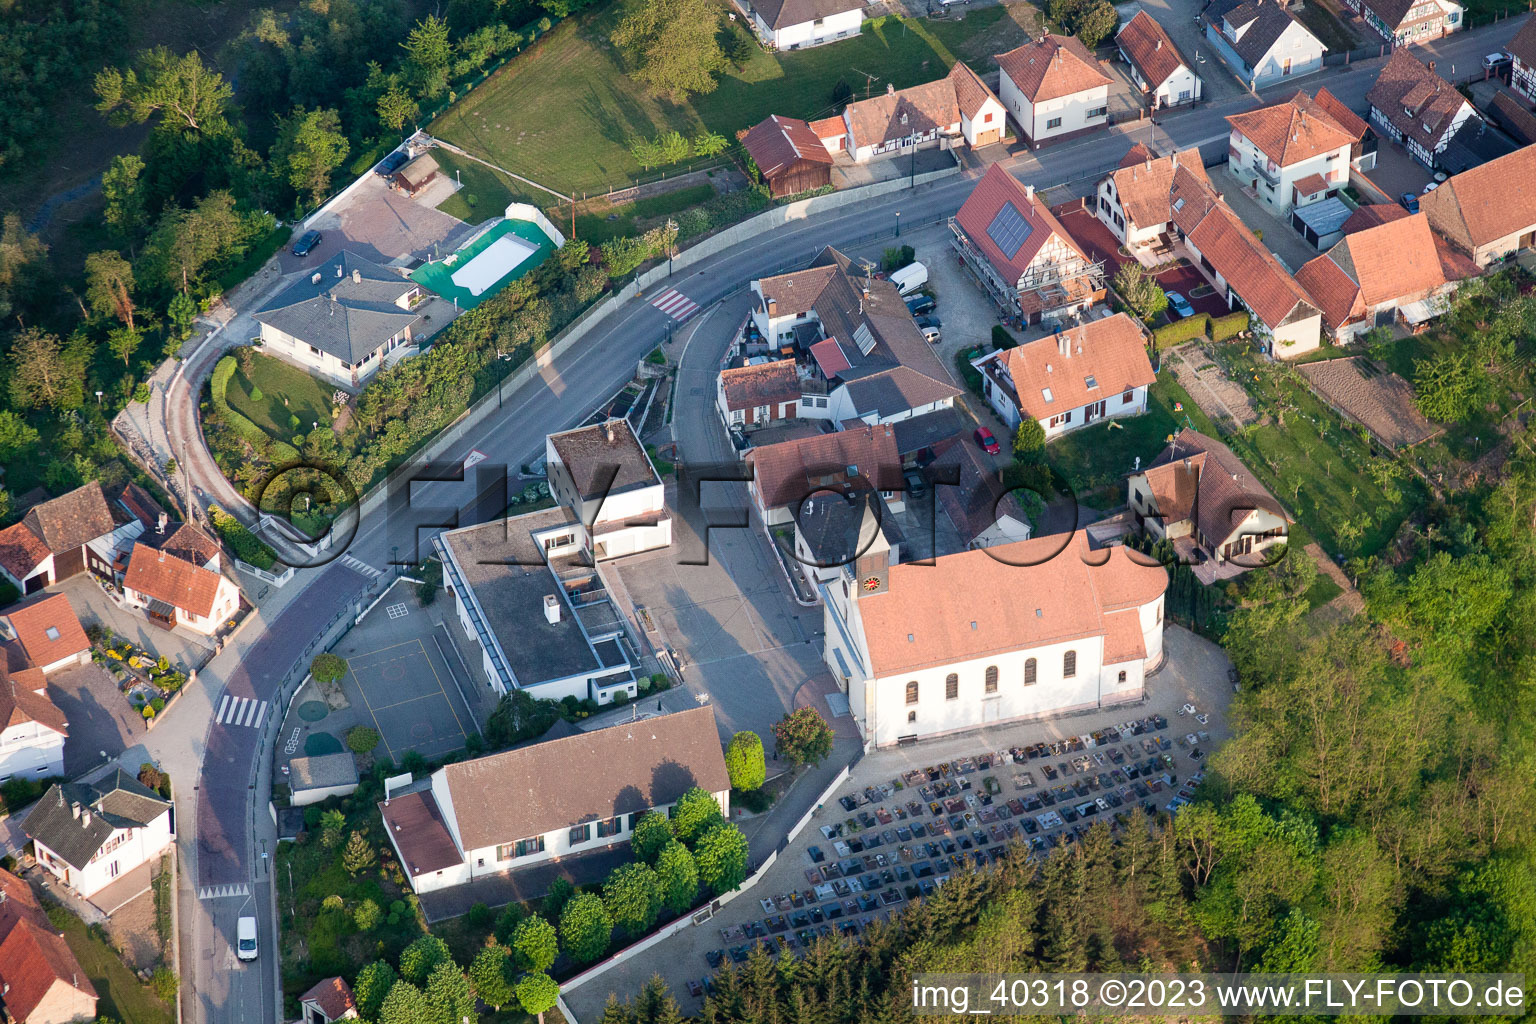 Munchhausen im Bundesland Bas-Rhin, Frankreich von der Drohne aus gesehen